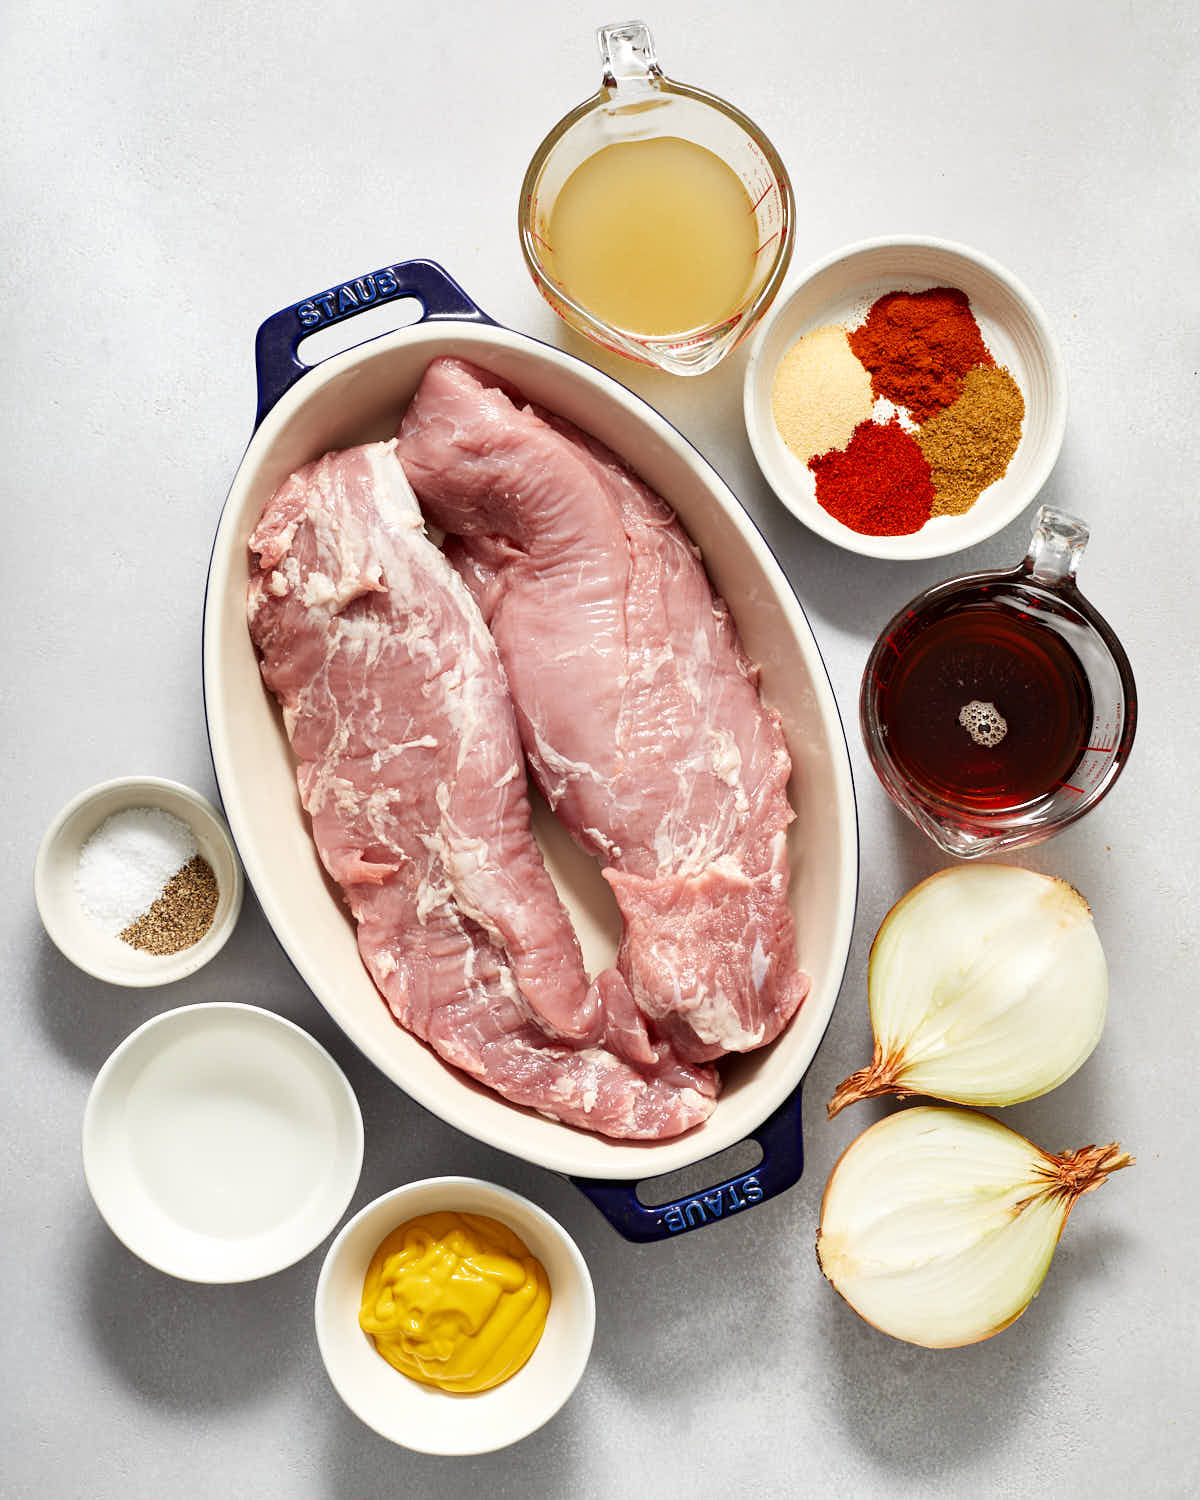 Ingredients to make pulled pork tenderloins.